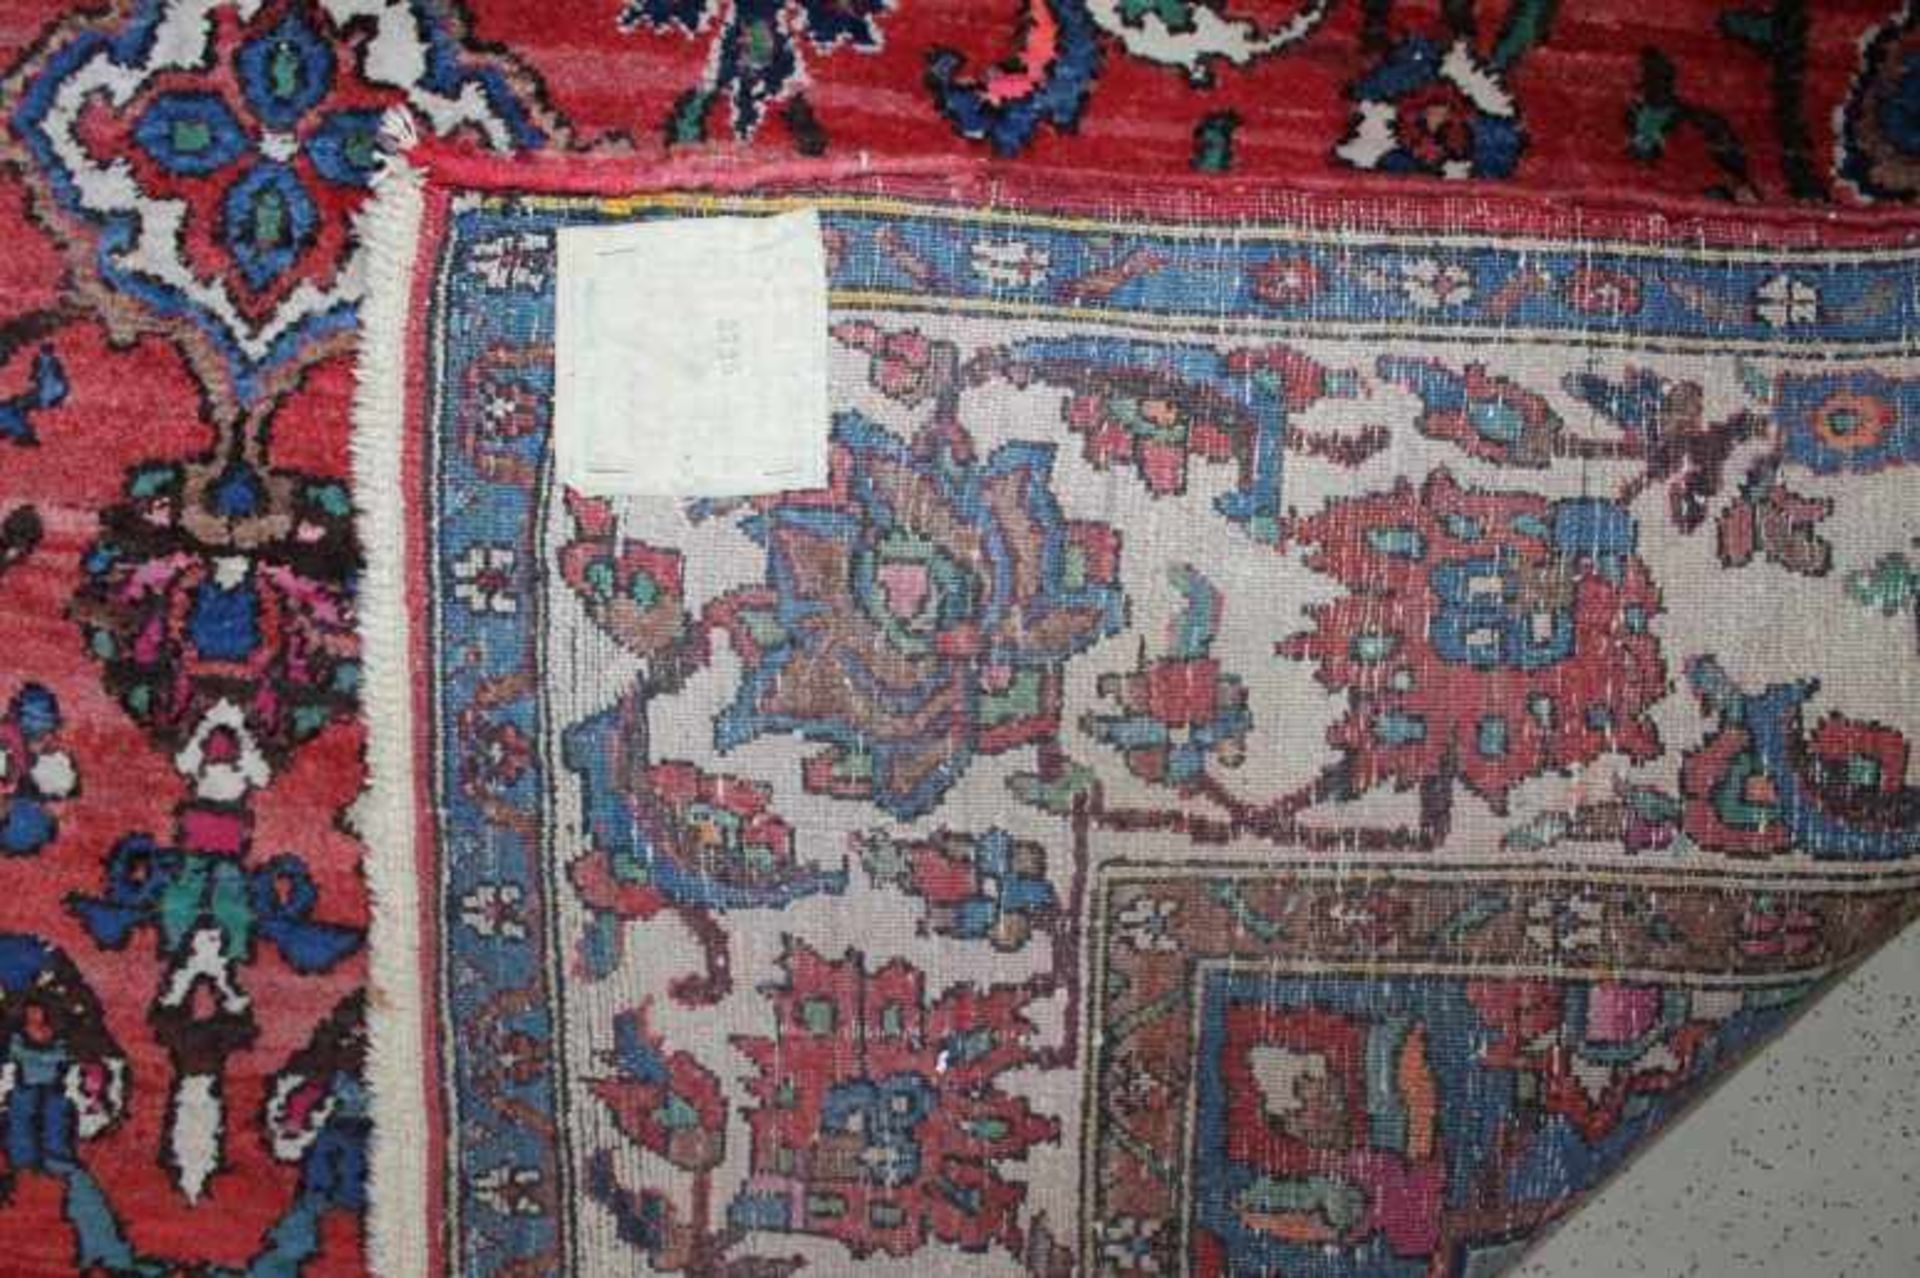 1 Teppich in Blau, Beige, Braun und Grüntönen gehalten, ca. 221cm x 151cm- - -23.50 % buyer's - Bild 2 aus 2